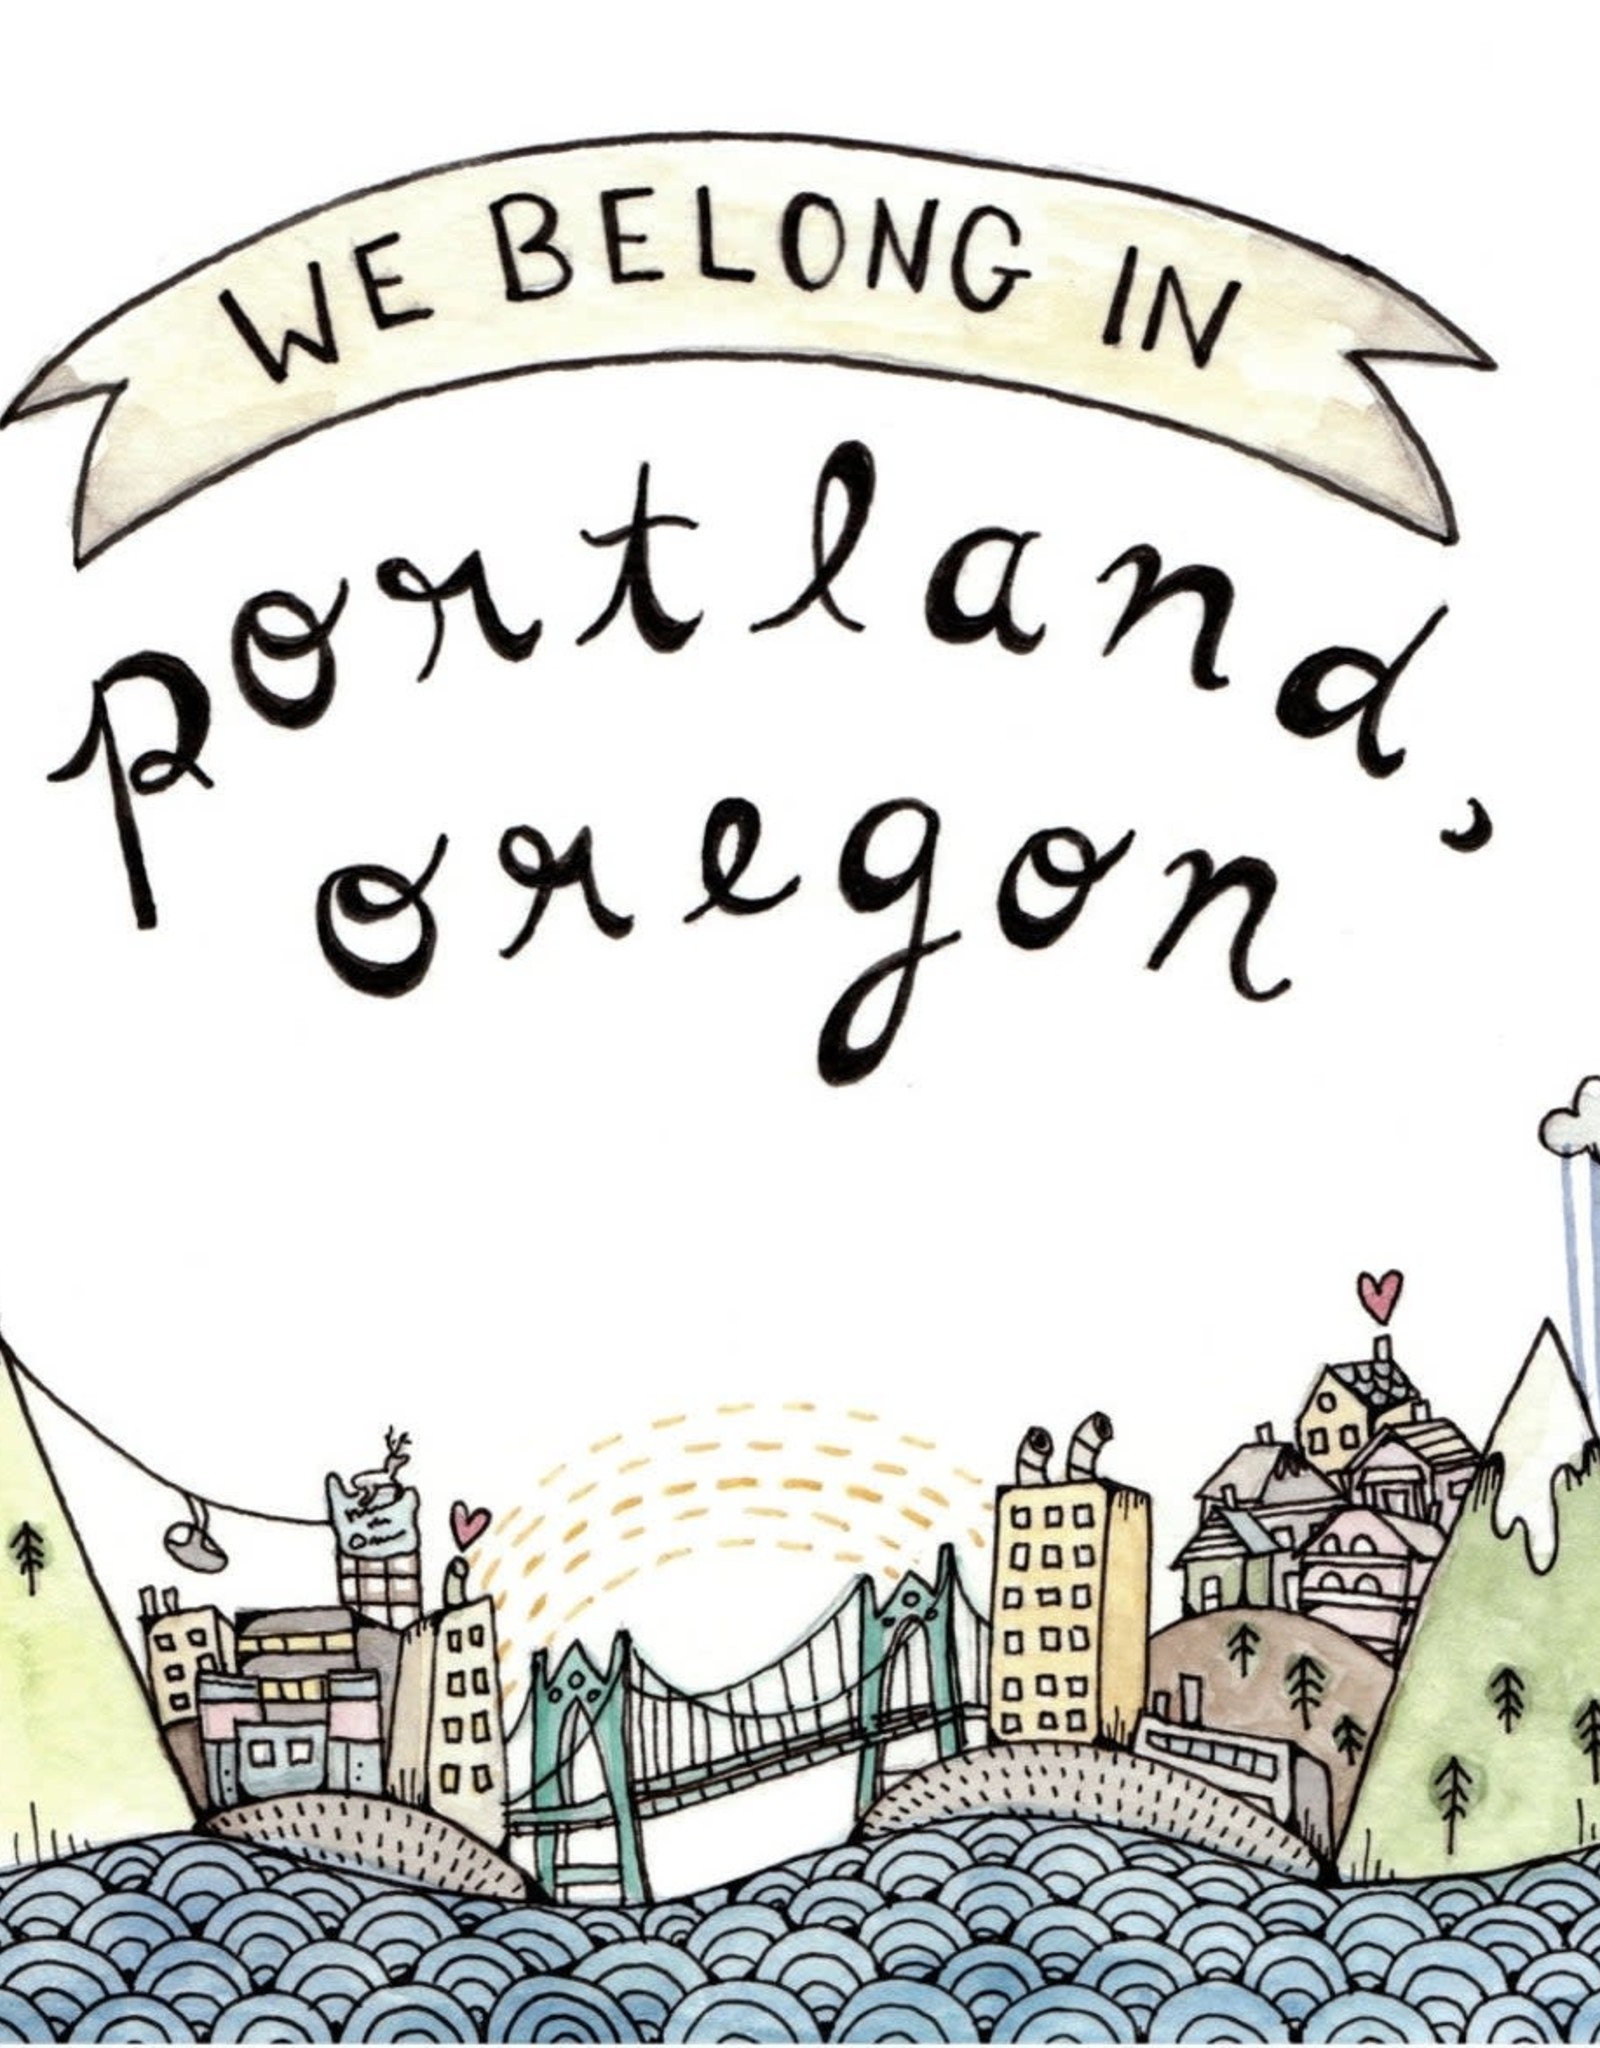 We Belong in Portland Oregon Greeting Card - Little Canoe